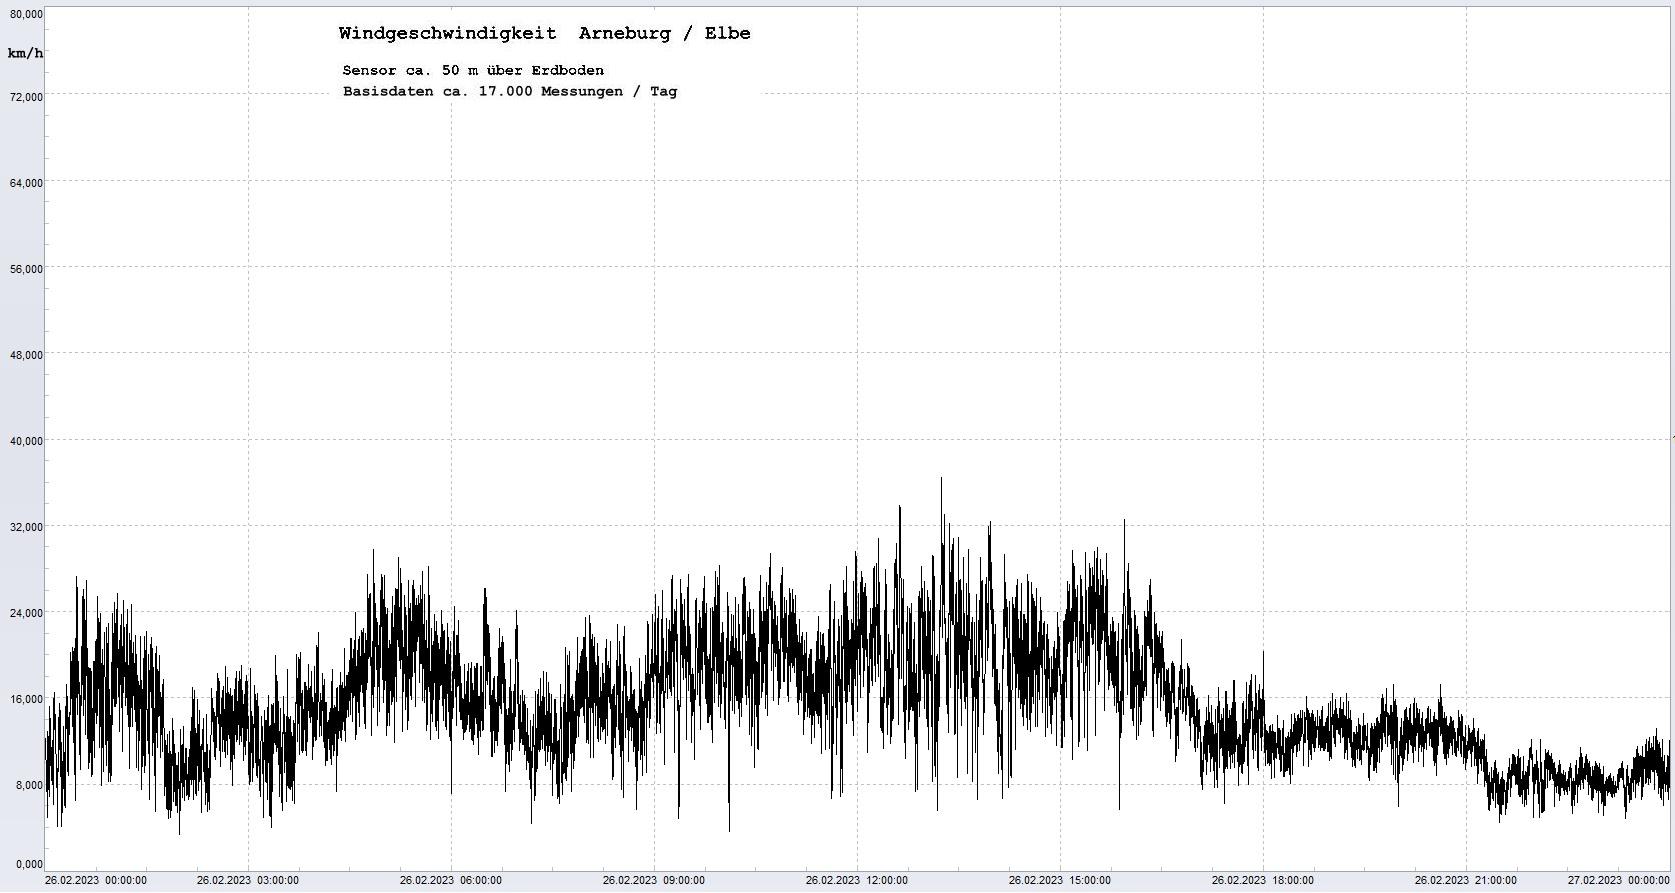 Arneburg Tages-Diagramm Winddaten, 26.02.2023
  Diagramm, Sensor auf Gebude, ca. 50 m ber Erdboden, Basis: 5s-Aufzeichnung